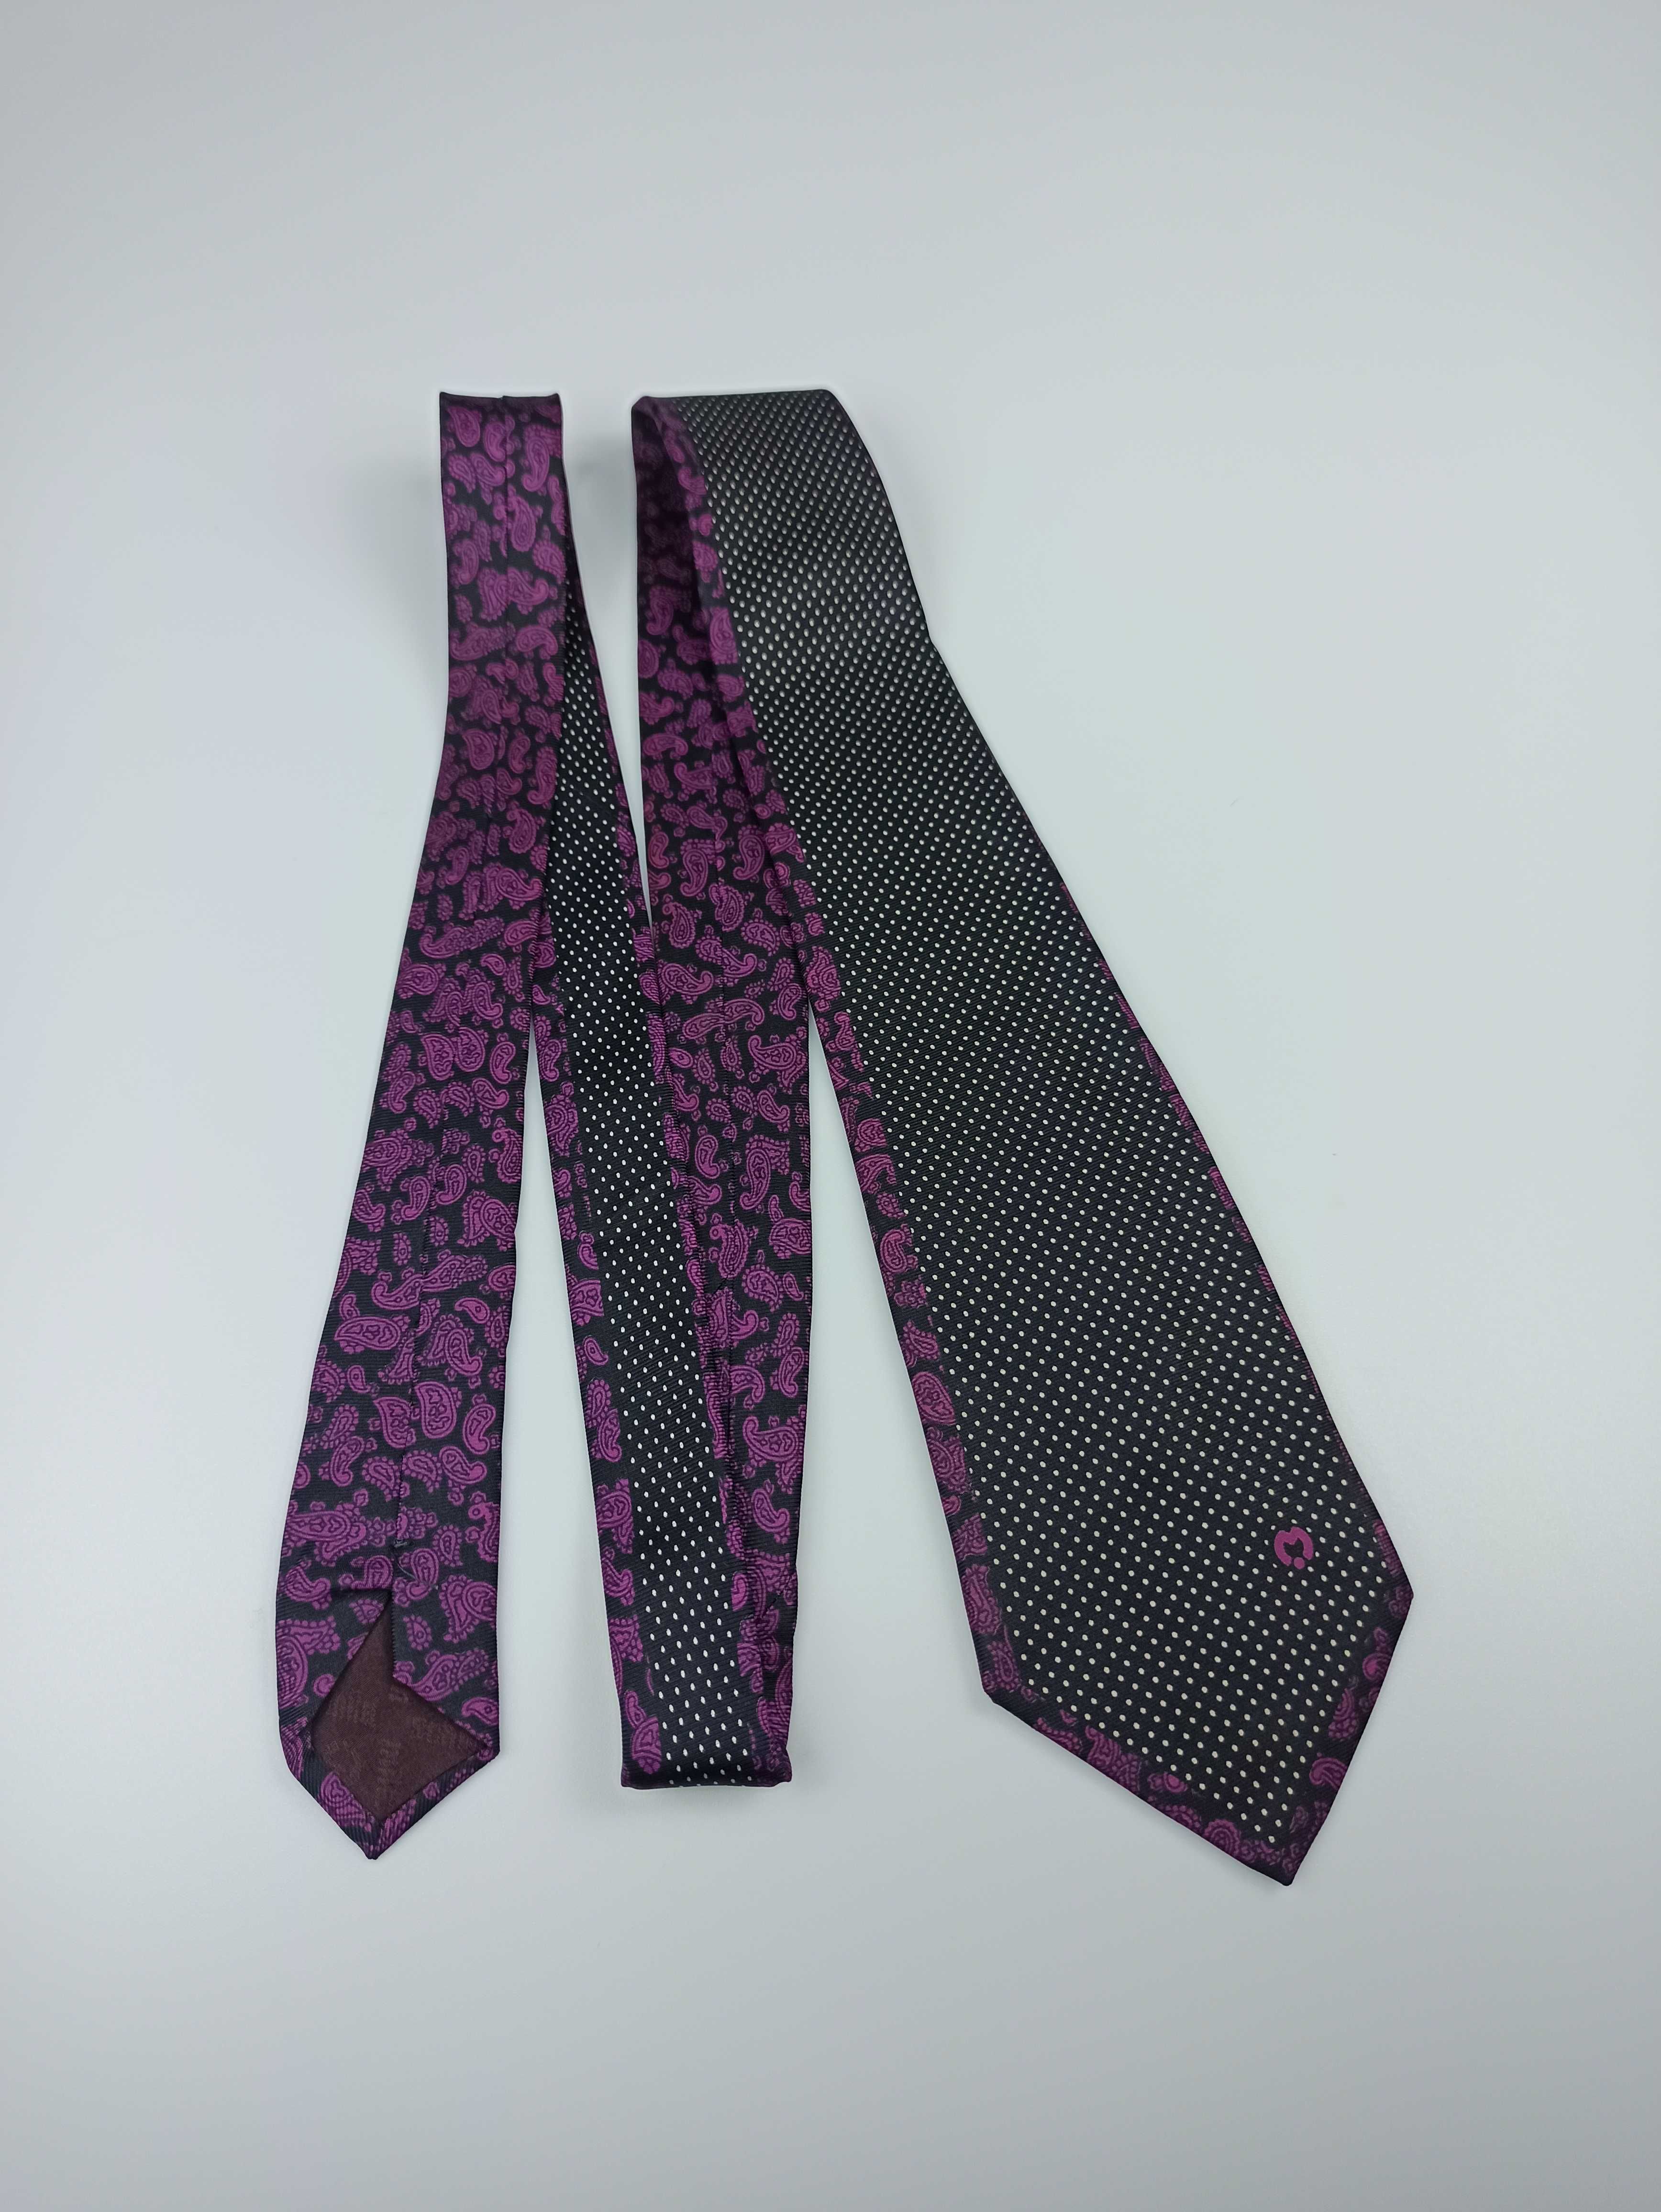 Mila Schon granatowy jedwabny krawat paisley vintage retro fa37